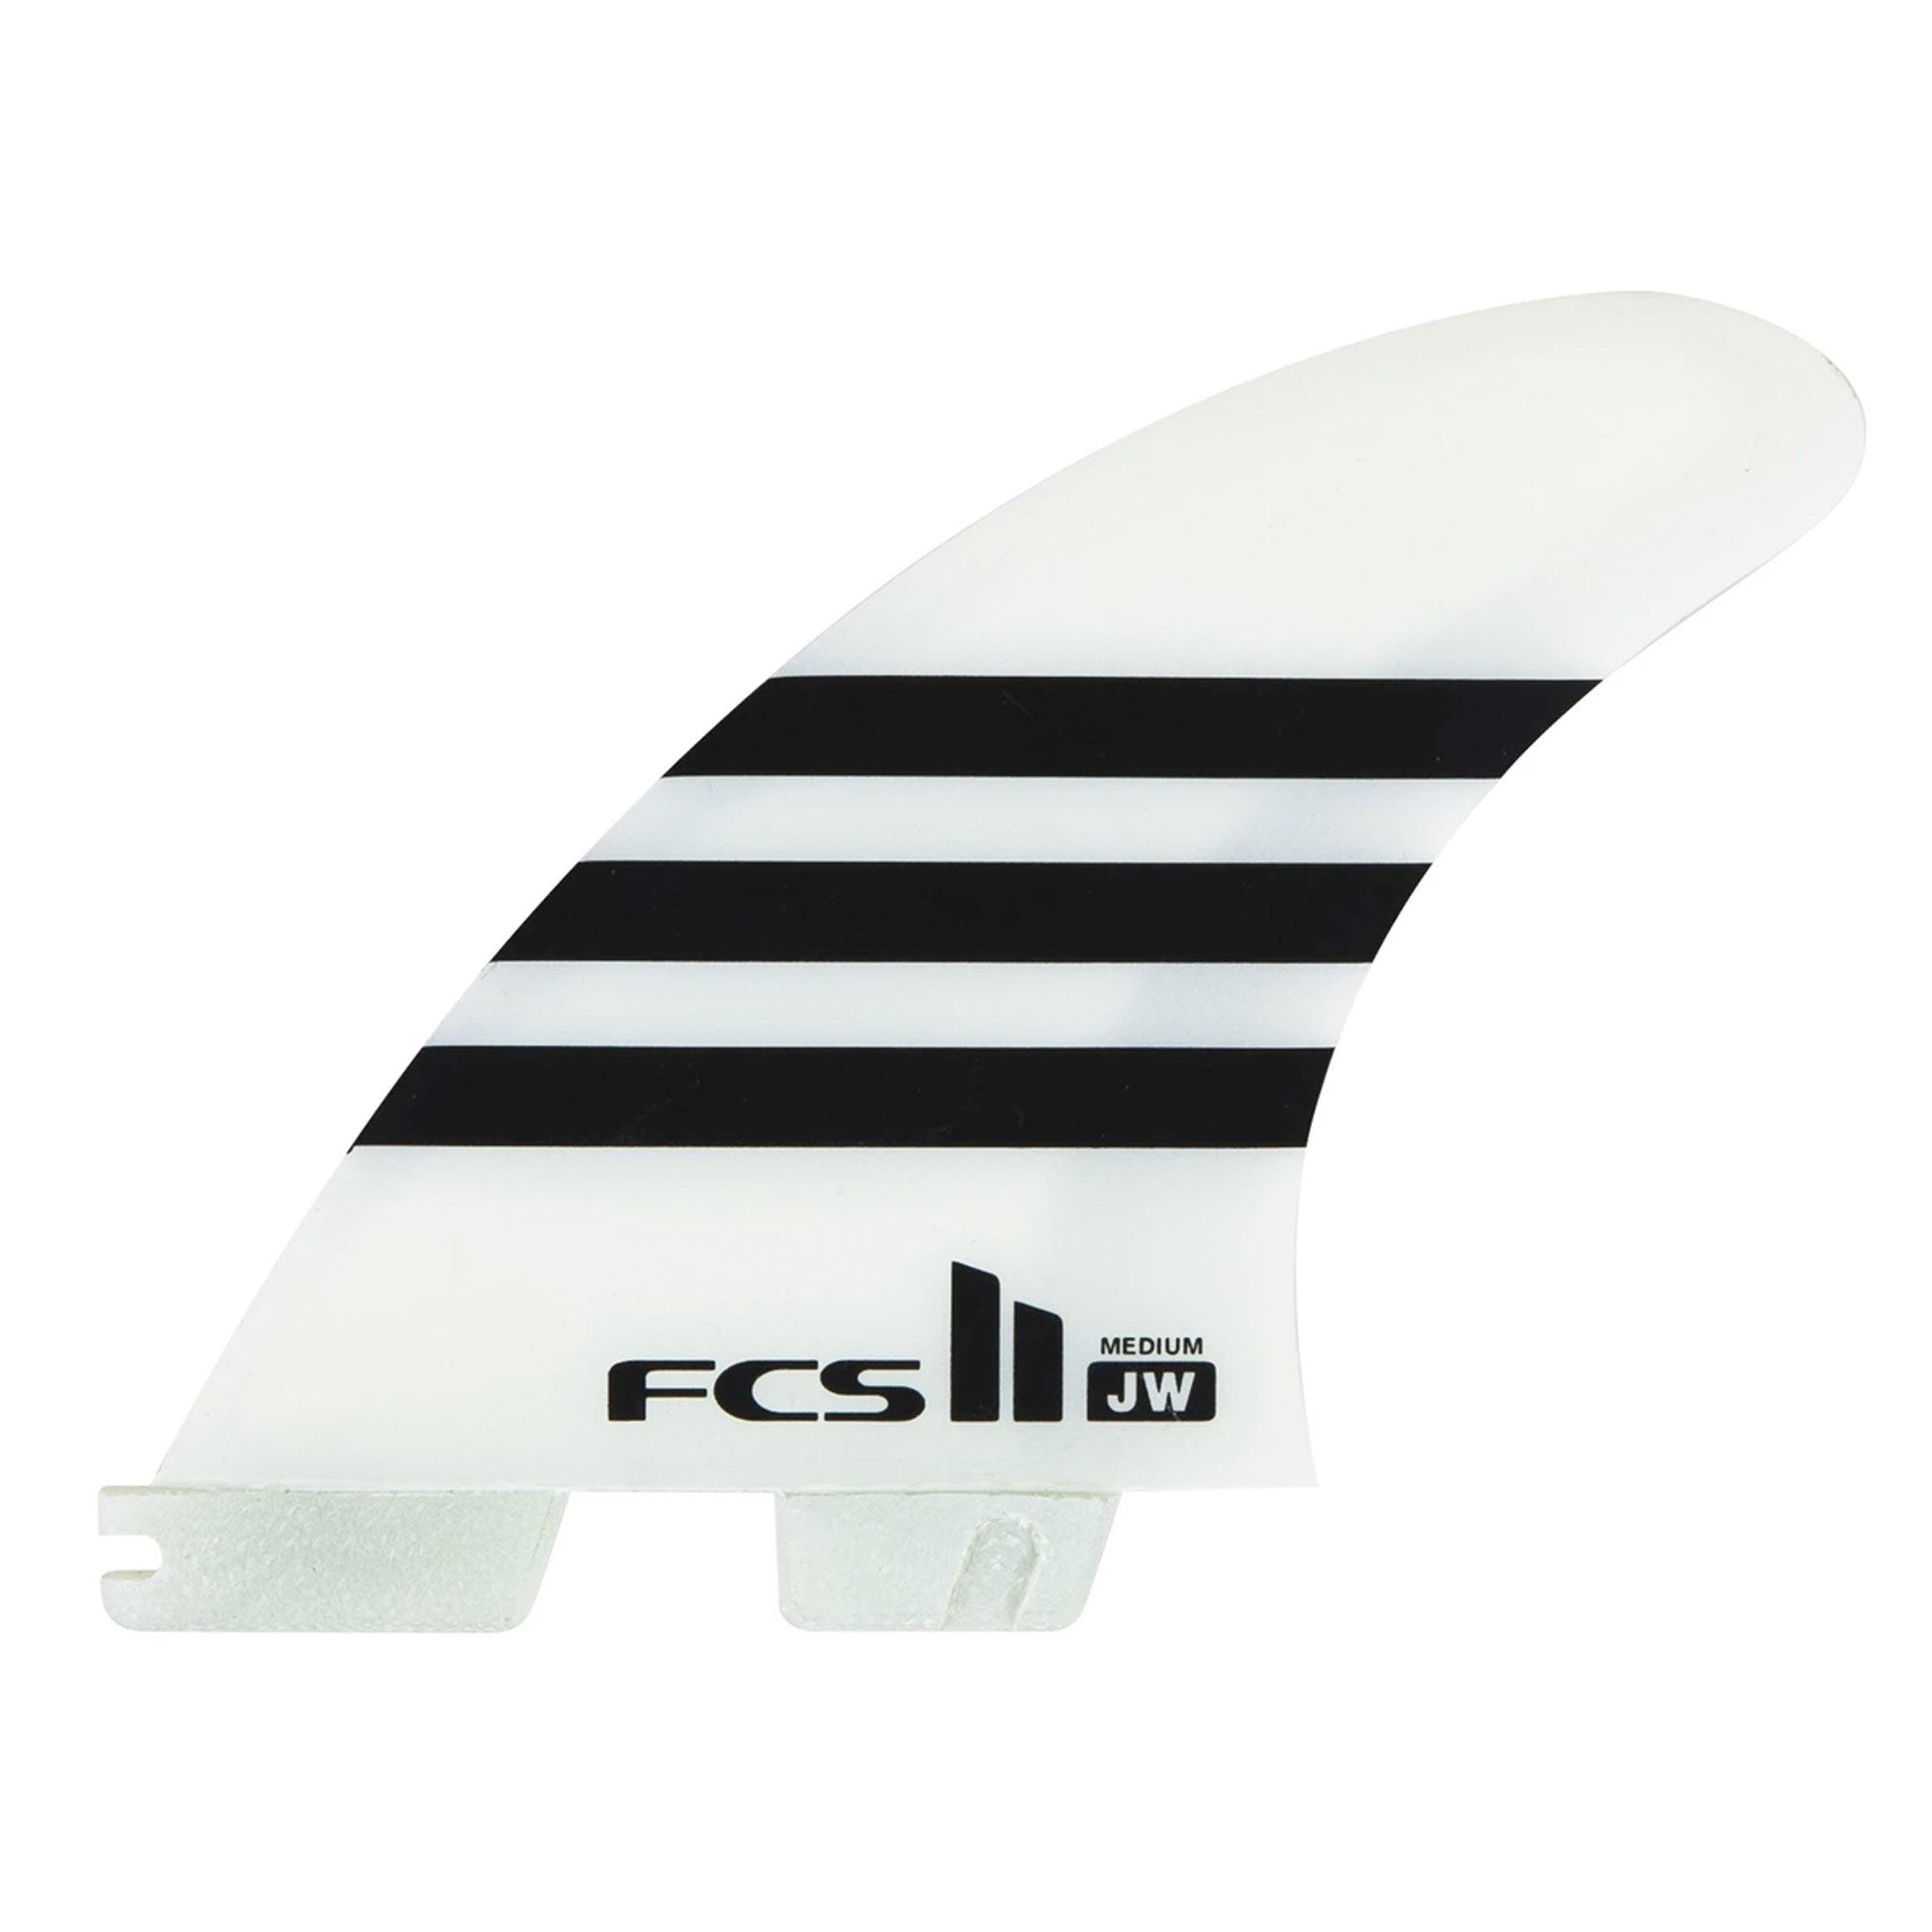 FCS II Julian Wilson Large PC Tri Surfboard Fins - Surf Station Store